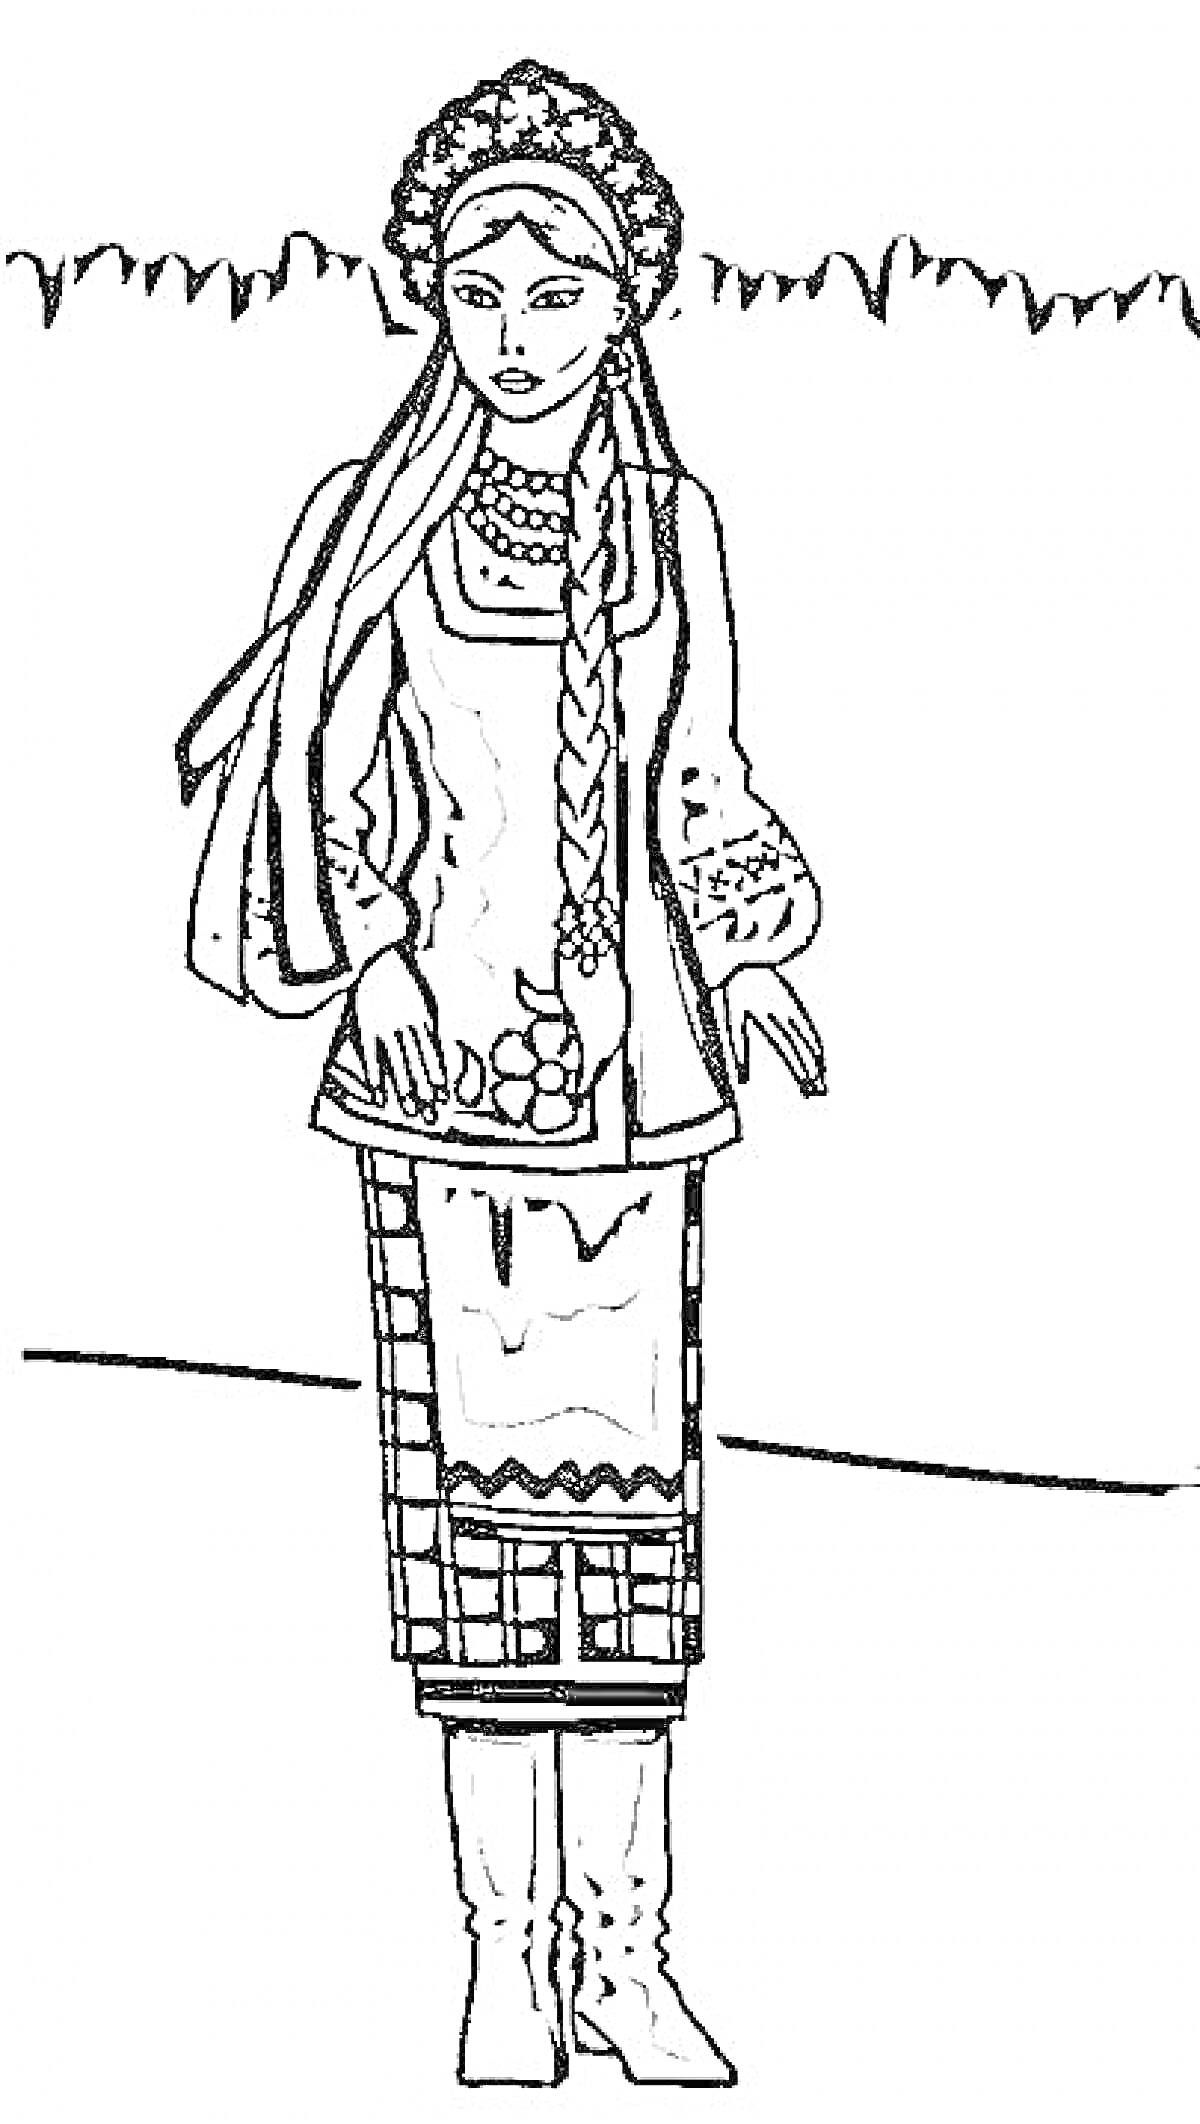 Женщина в традиционной одежде, с длинной косой, в расшитой рубахе, юбке с узорами и сапогах